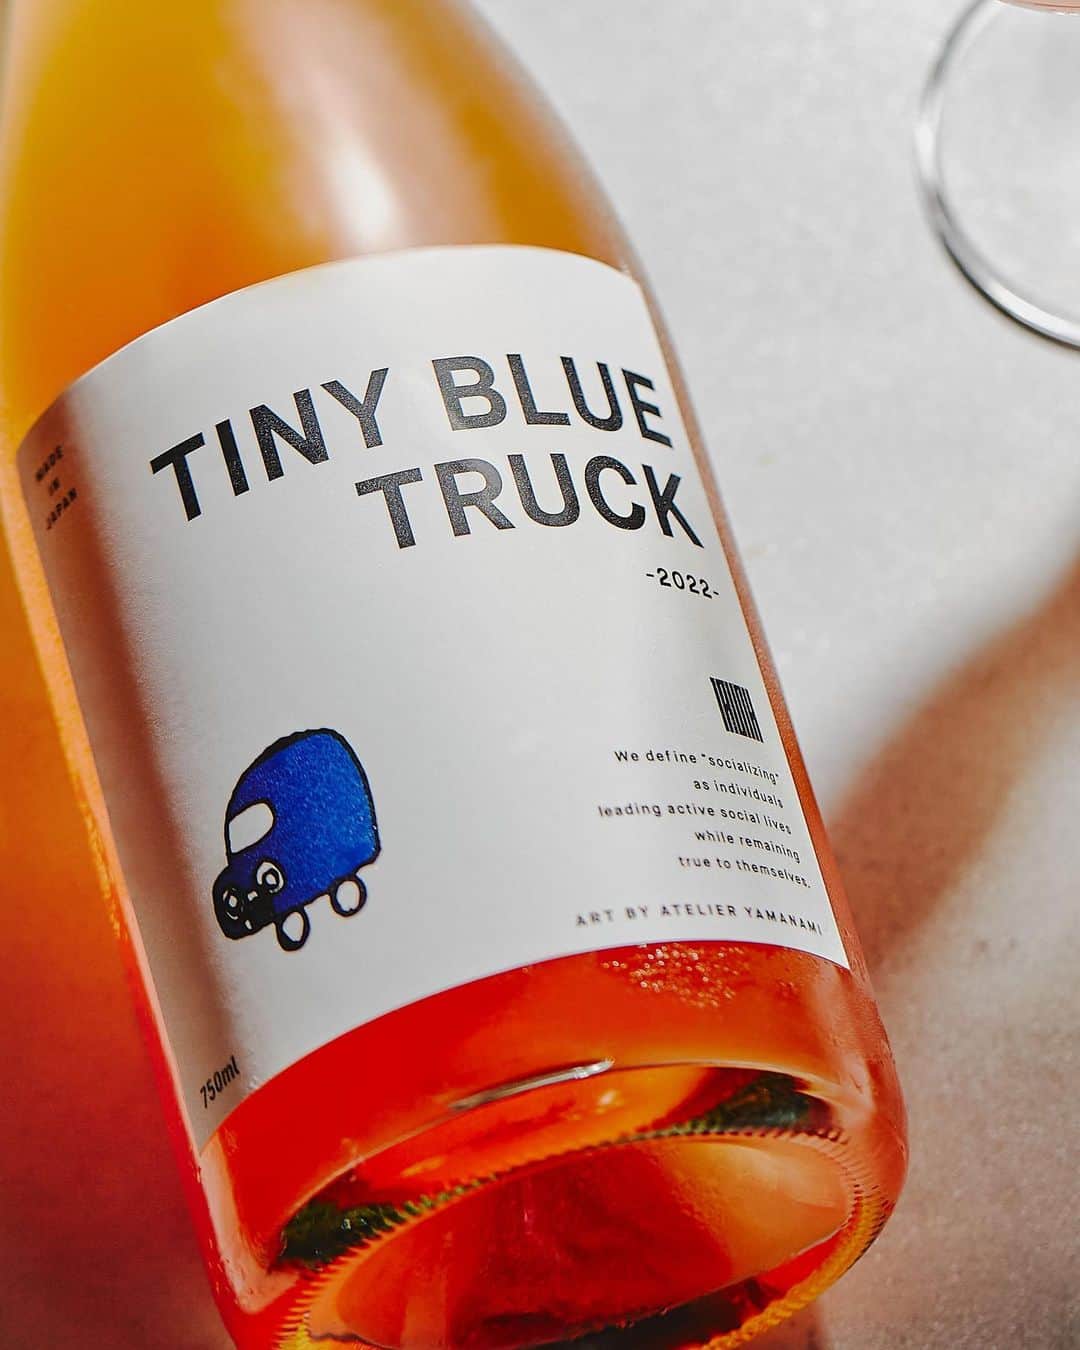 TRUNK(HOTEL)のインスタグラム：「●TINY BLUE TRUCK 2022 TRUNK(HOTEL) Limited Edition  "TINY BLUE TRUCK 2022(青い軽トラ2022) TRUNK(HOTEL) Limited Edition” 第3弾はオリジナルラベルのロゼワイン。 薄濁りのアプリコット色の微発泡で、開けたては瑞々しい香りと吟醸香。  過疎化に苦しむ地元広島県の支援や、障害者の社会参加に積極的に取り組んだこのプロジェクトと、TRUNK(HOTEL)が掲げる等身大の社会貢献SOCIALIZINGが深く共鳴し合い、2020年の初のコラボレーションボトルからシリーズ化しました。  このワインの売り上げの一部は、no.501を通して、障害者支援施設をはじめ、過疎化する地元地域の支援金として寄付いたします。  9月1日から300本限定で、TRUNK(LOUNGE)、TRUNK(KITCHEN)、TRUNK(STORE)での提供を開始し、TRUNK(STORE)では、ラベルデザインに使用したイラストの原画を展示しております。  TRUNK(STORE)オンラインストアへは、プロフィールのURLからアクセスできます。  ・・・  "TINY BLUE TRUCK 2022 TRUNK(HOTEL) Limited Edition" The third edition is a rosé wine with an original label.  It has a slightly cloudy apricot-colored foam, and upon opening it, you are drawn in by a fresh and fruity aroma.  This project was actively engaged in supporting the local Hiroshima Prefecture suffering from depopulation and public participation of disabled communities. TRUNK(HOTEL)'s life-size social contribution “SOCIALIZING” resonated deeply with each other and the series began with the first collaboration bottle in 2020.  A portion of the proceeds from the sale of this wine will be donated through No.501 in hopes to support facilities for the disabled and other depopulated local communities.  Limited to just 300 bottles from September 1st, “TINY BLUE TRUCK” will be available at TRUNK(LOUNGE), TRUNK(KITCHEN), and TRUNK(STORE). The bottle label’s original handmade design can also be found at the TRUNK(STORE).  TRUNK(STORE) can be accessed online through the URL in the profile.  #trunk #trunkhotel #trunkkushi #socializing #hotel #tokyo #jingumae #harajuku #wine #roséwine」